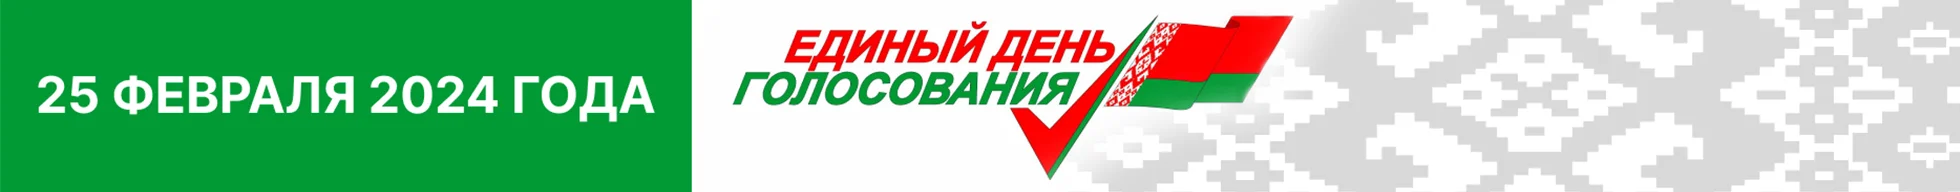 Центральная избирательная комиссия Республики Беларусь